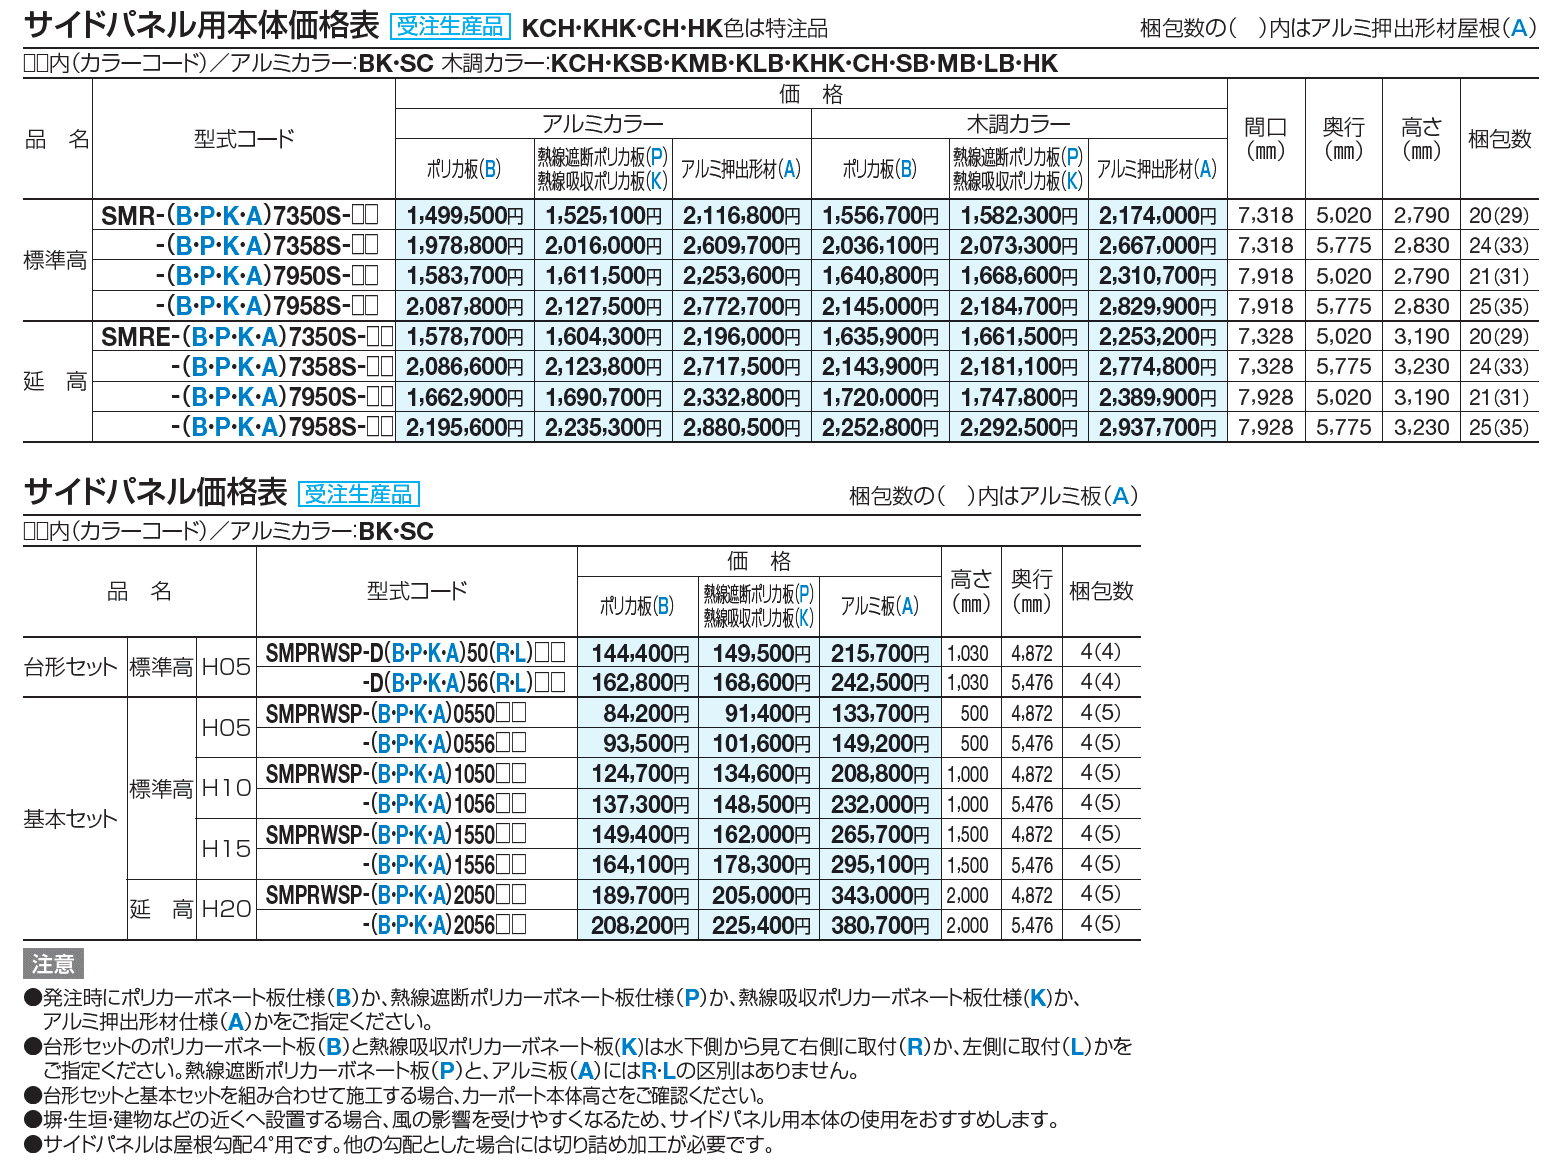 スマートポートR トリプルワイド(サイドパネル用)【2023年版】_価格_1